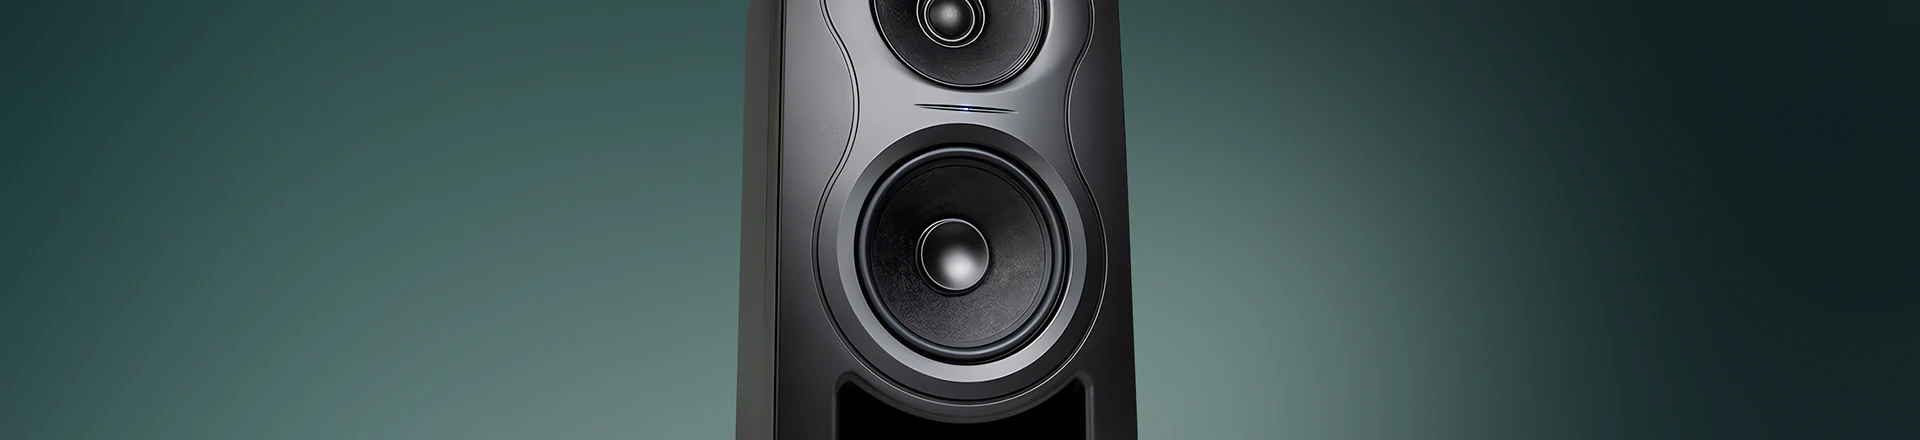 Project Lone Pine V2 - Kali Audio zaprezentowało drugą generację monitorów LP-6 i LP-8